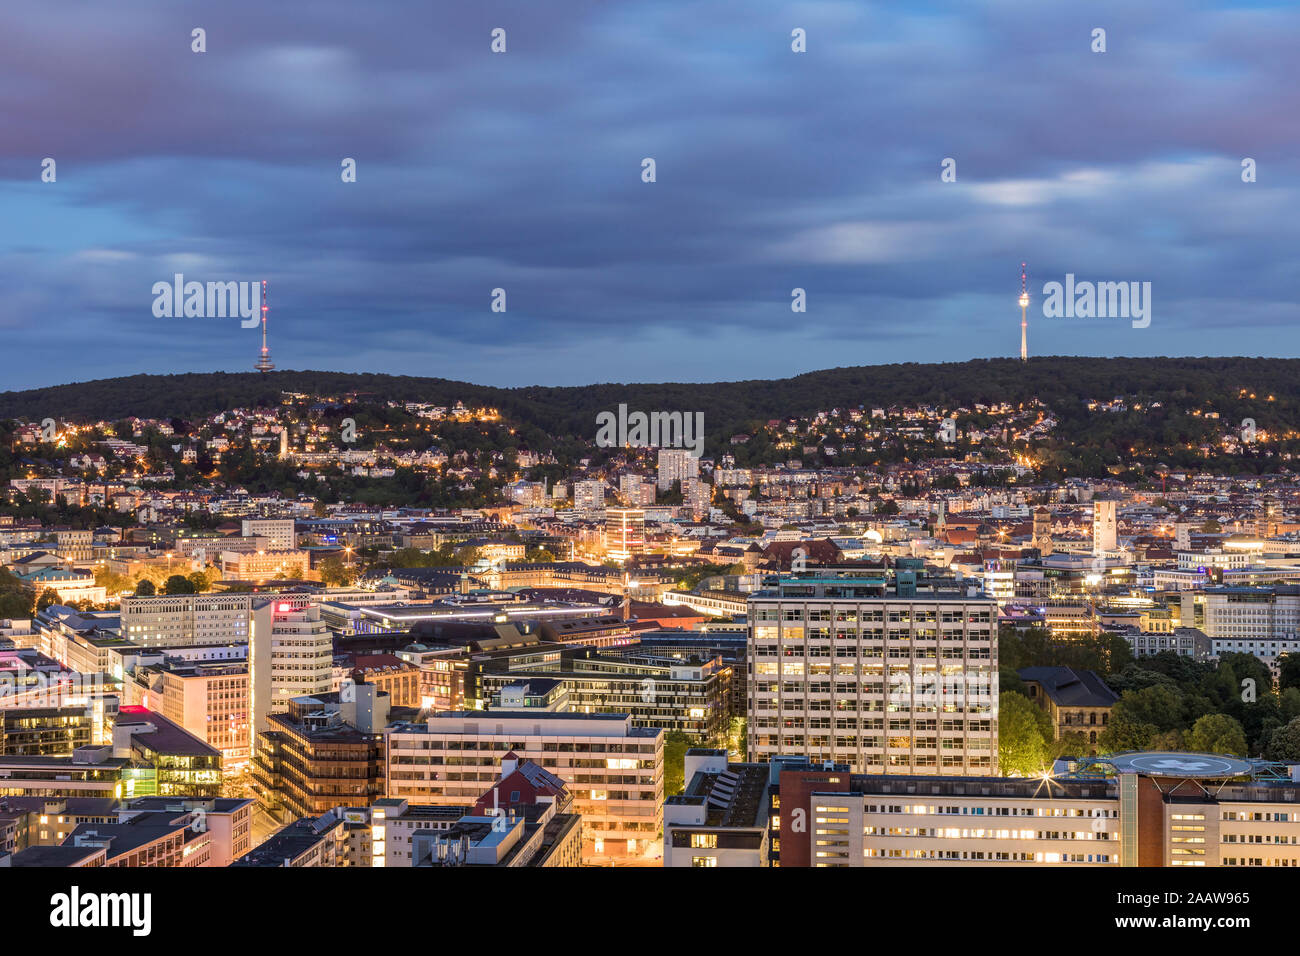 Les bâtiments illuminés et tour de communications contre ciel nuageux au crépuscule à Stuttgart, Allemagne Banque D'Images